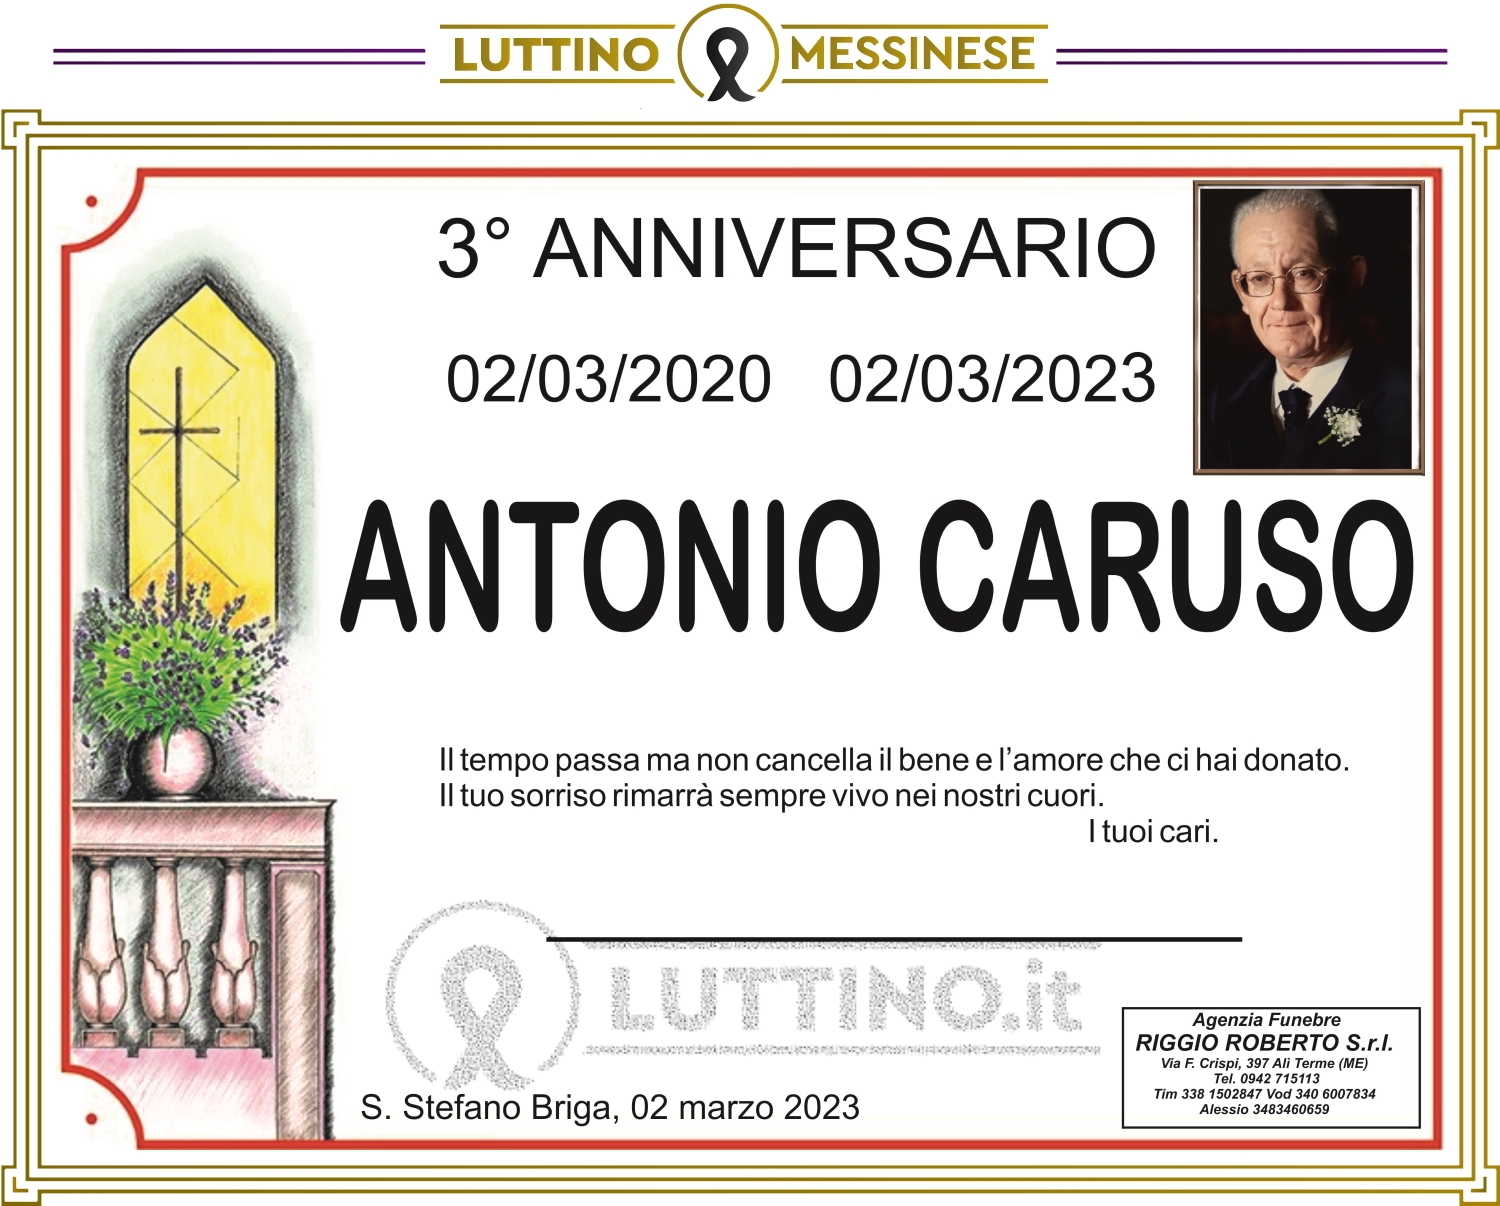 Antonio Caruso 